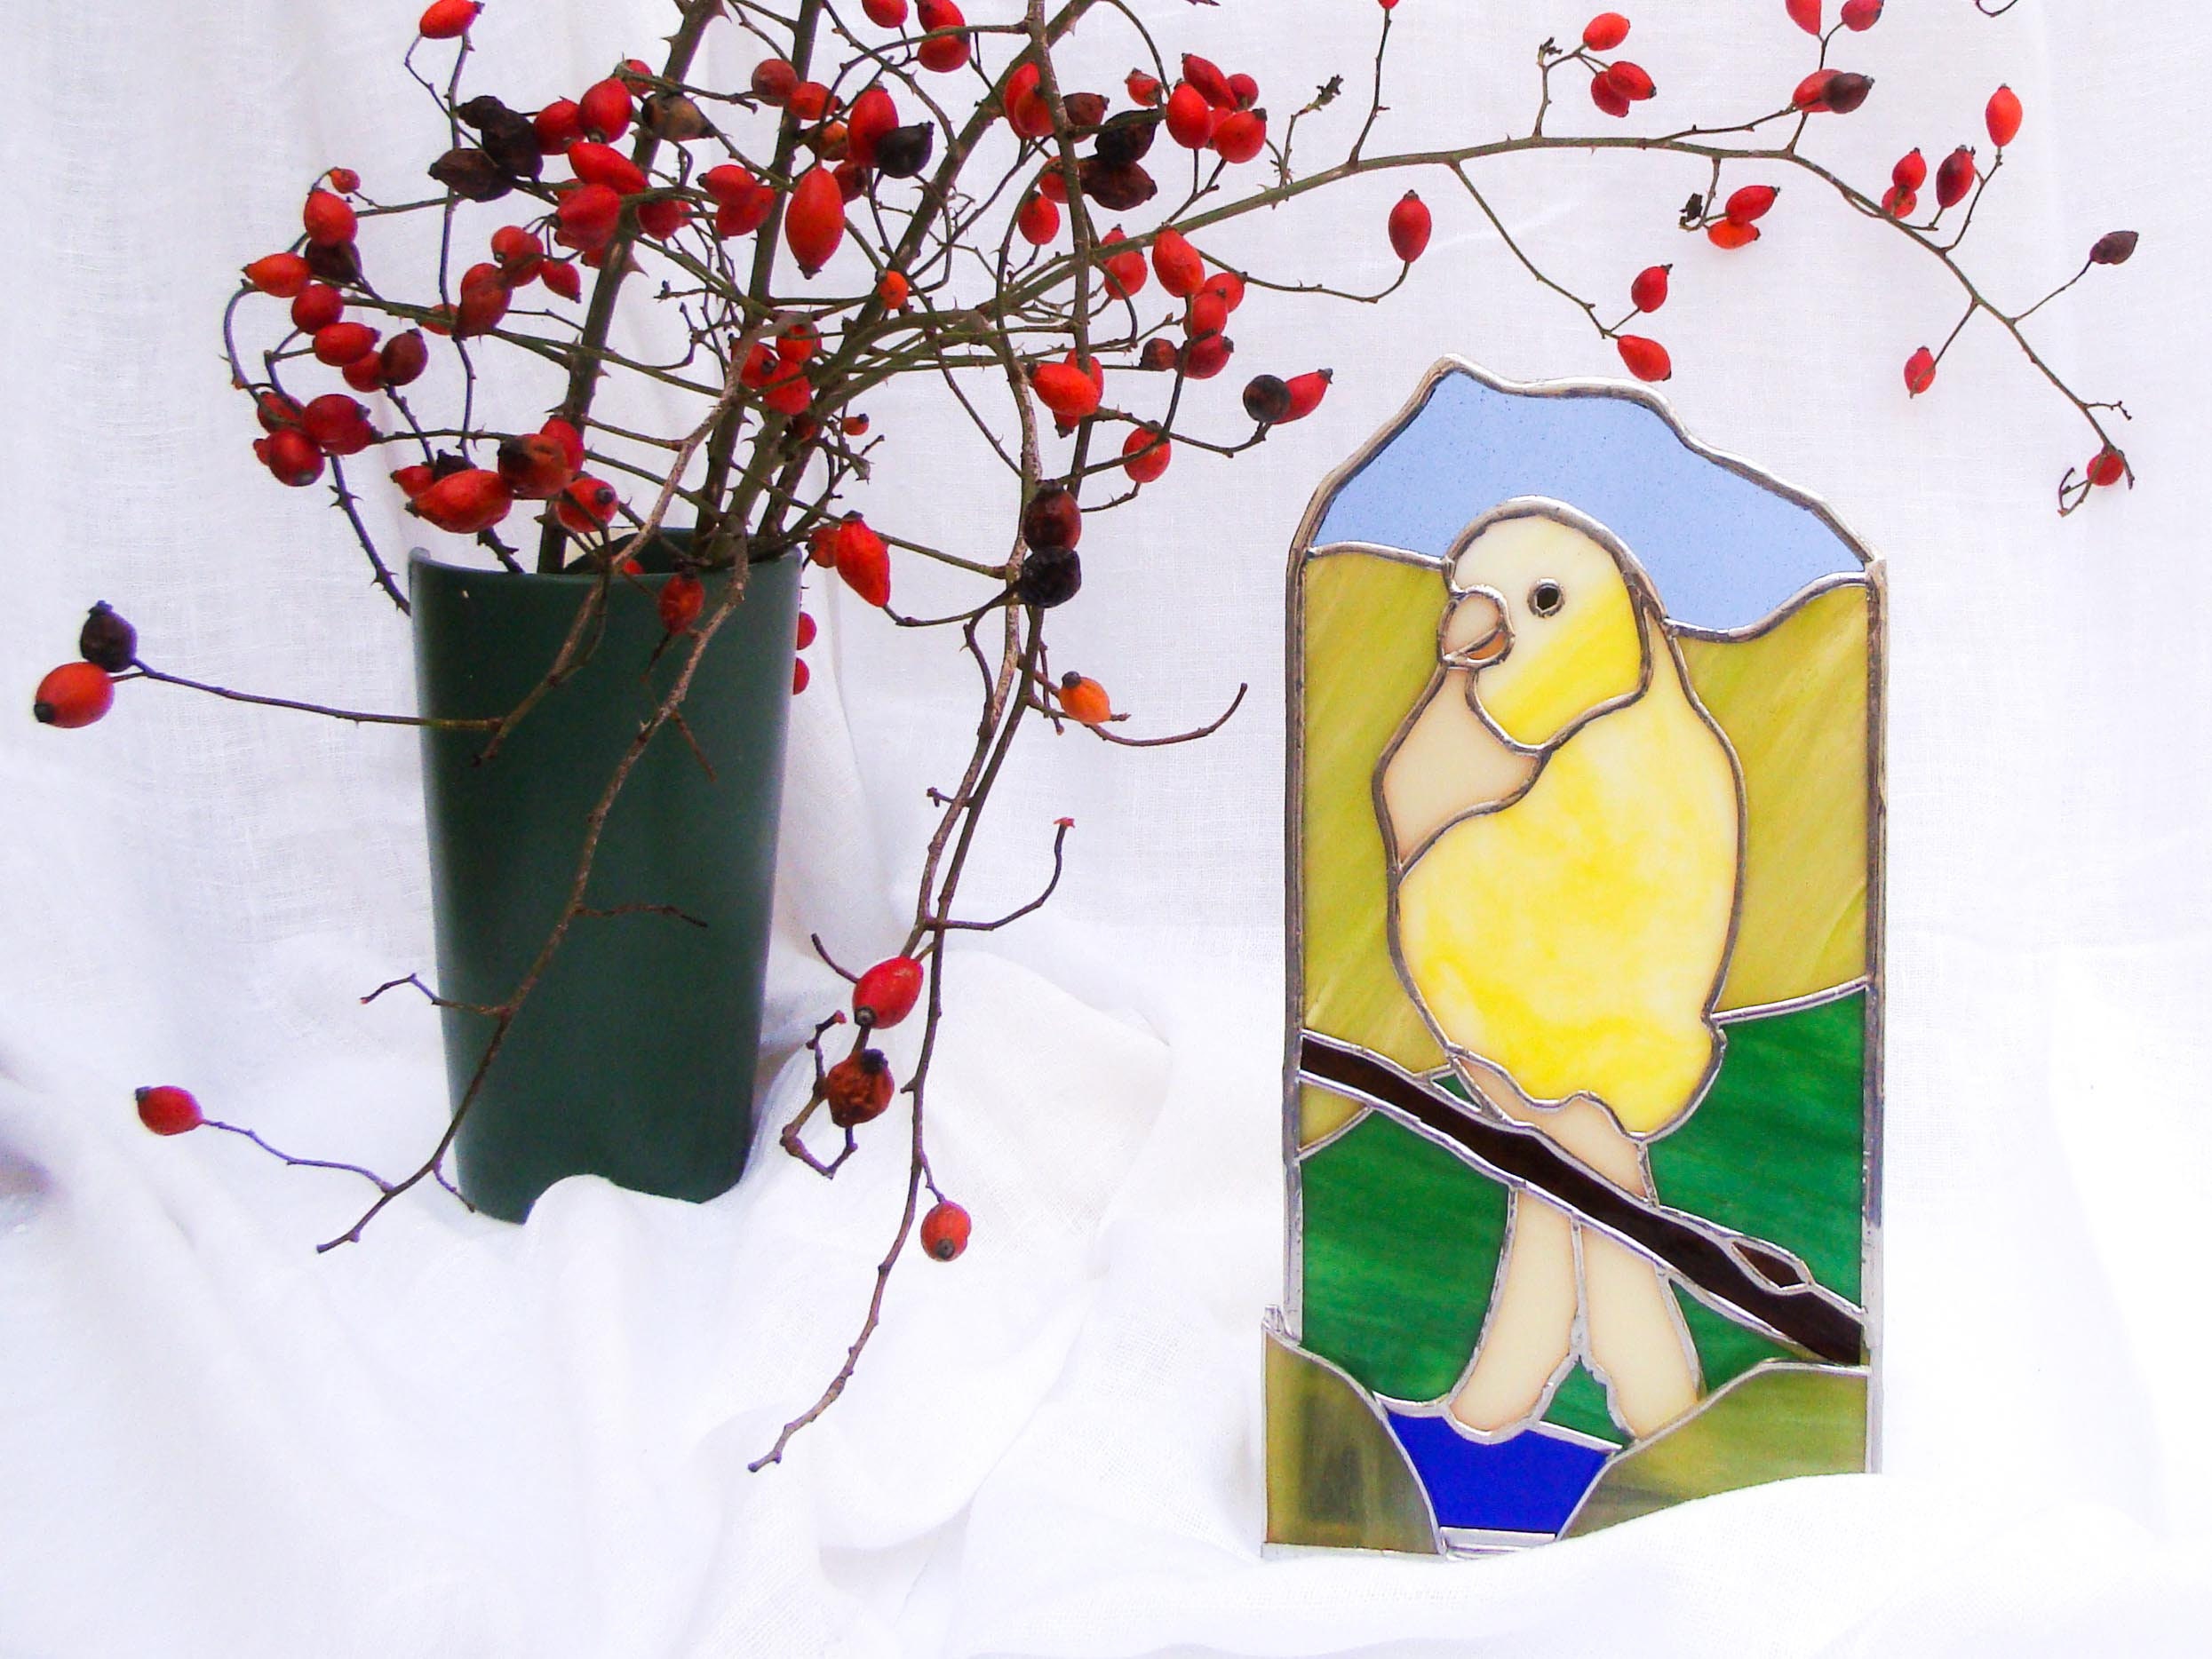 Panneau de Verre Teinté Debout Libre avec Oiseau Canari, Attrape-Soleil Pour Windowsill ou Ornement 